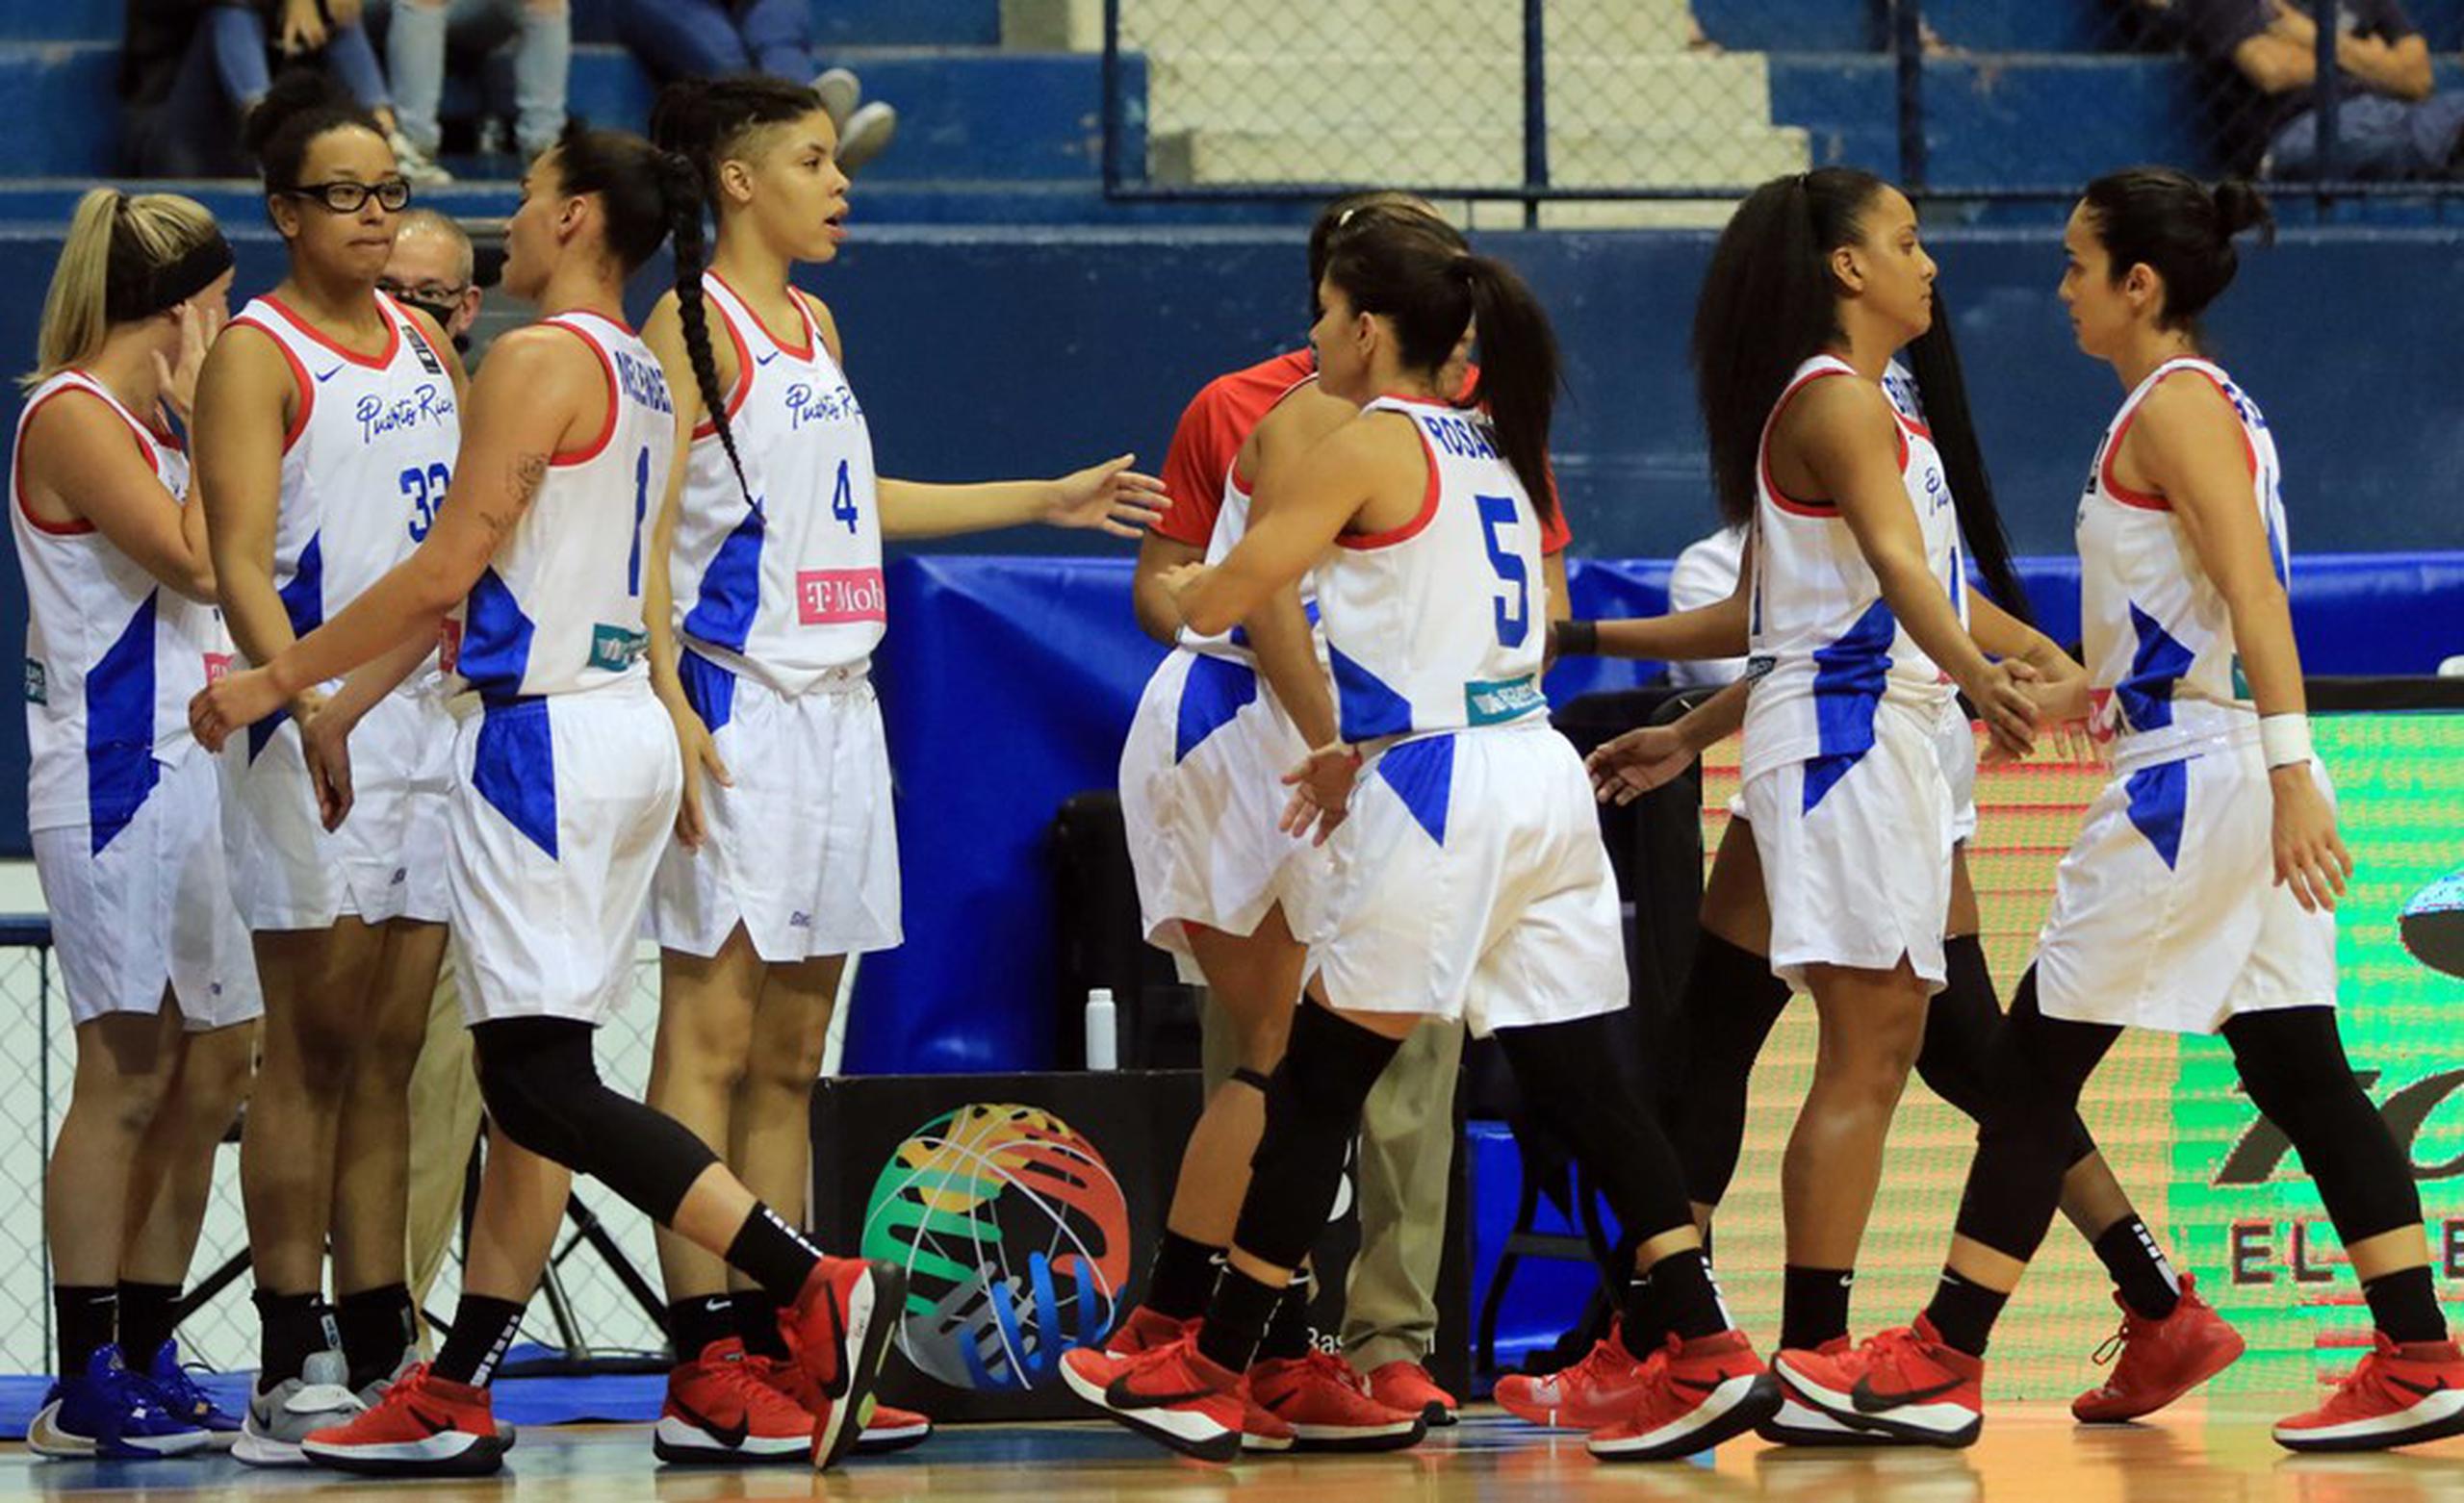 Aademás de la medalla de oro, Puerto Rico aseguró su participación en el certamen AmeriCup 2021 que se llevará a cabo en la isla del 11 al 19 de junio.